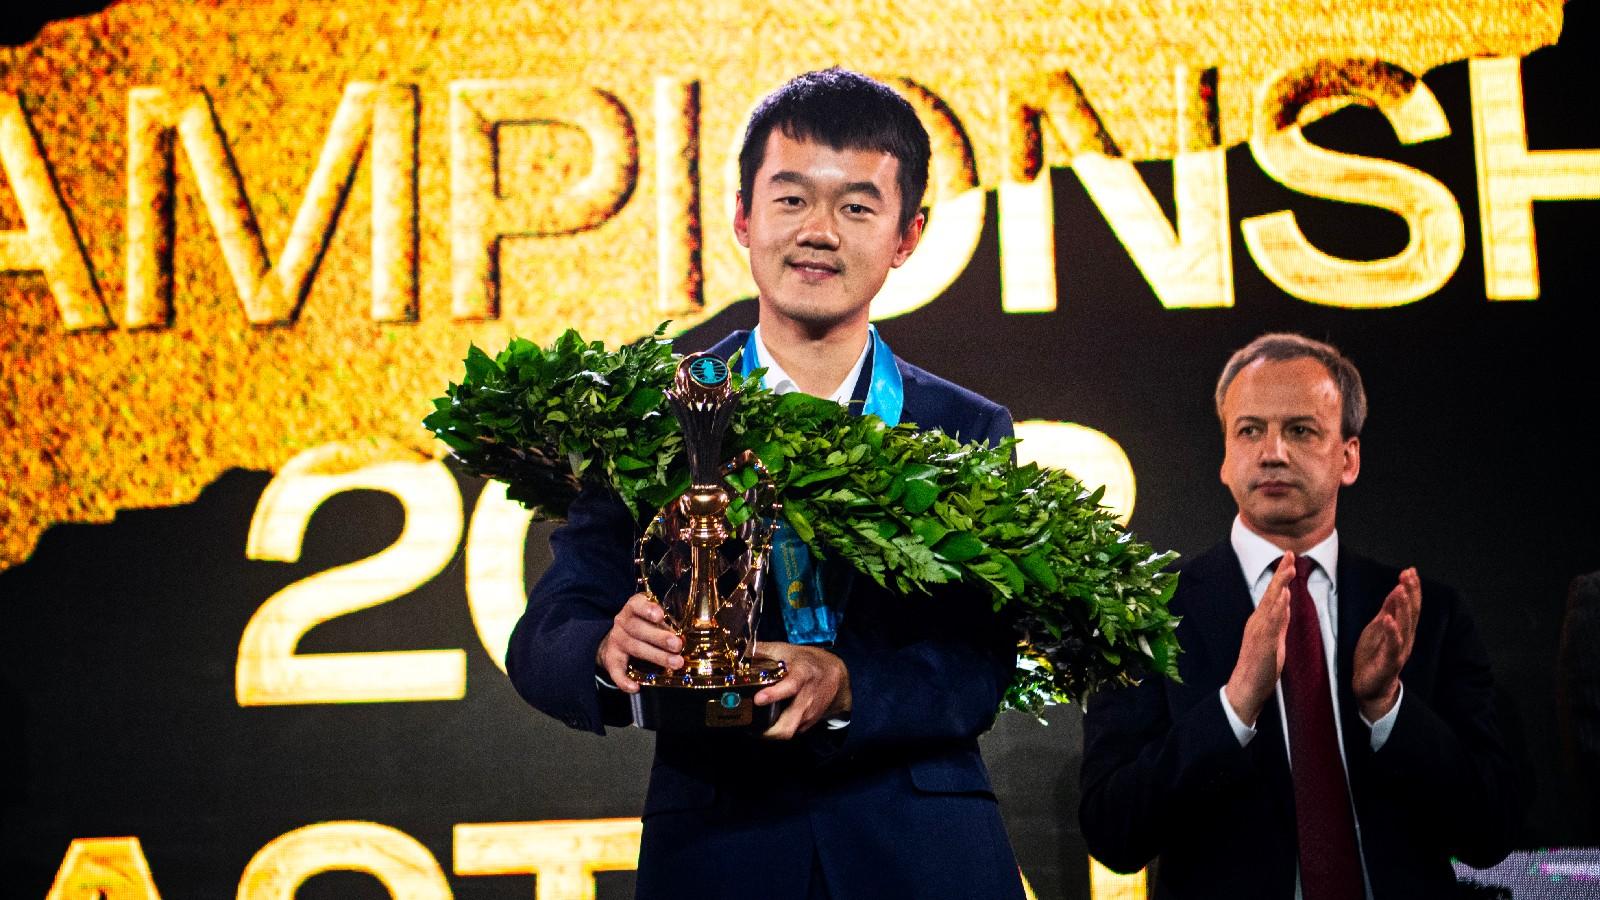 Ding Liren wins 2023 World Chess Championship: Match score and